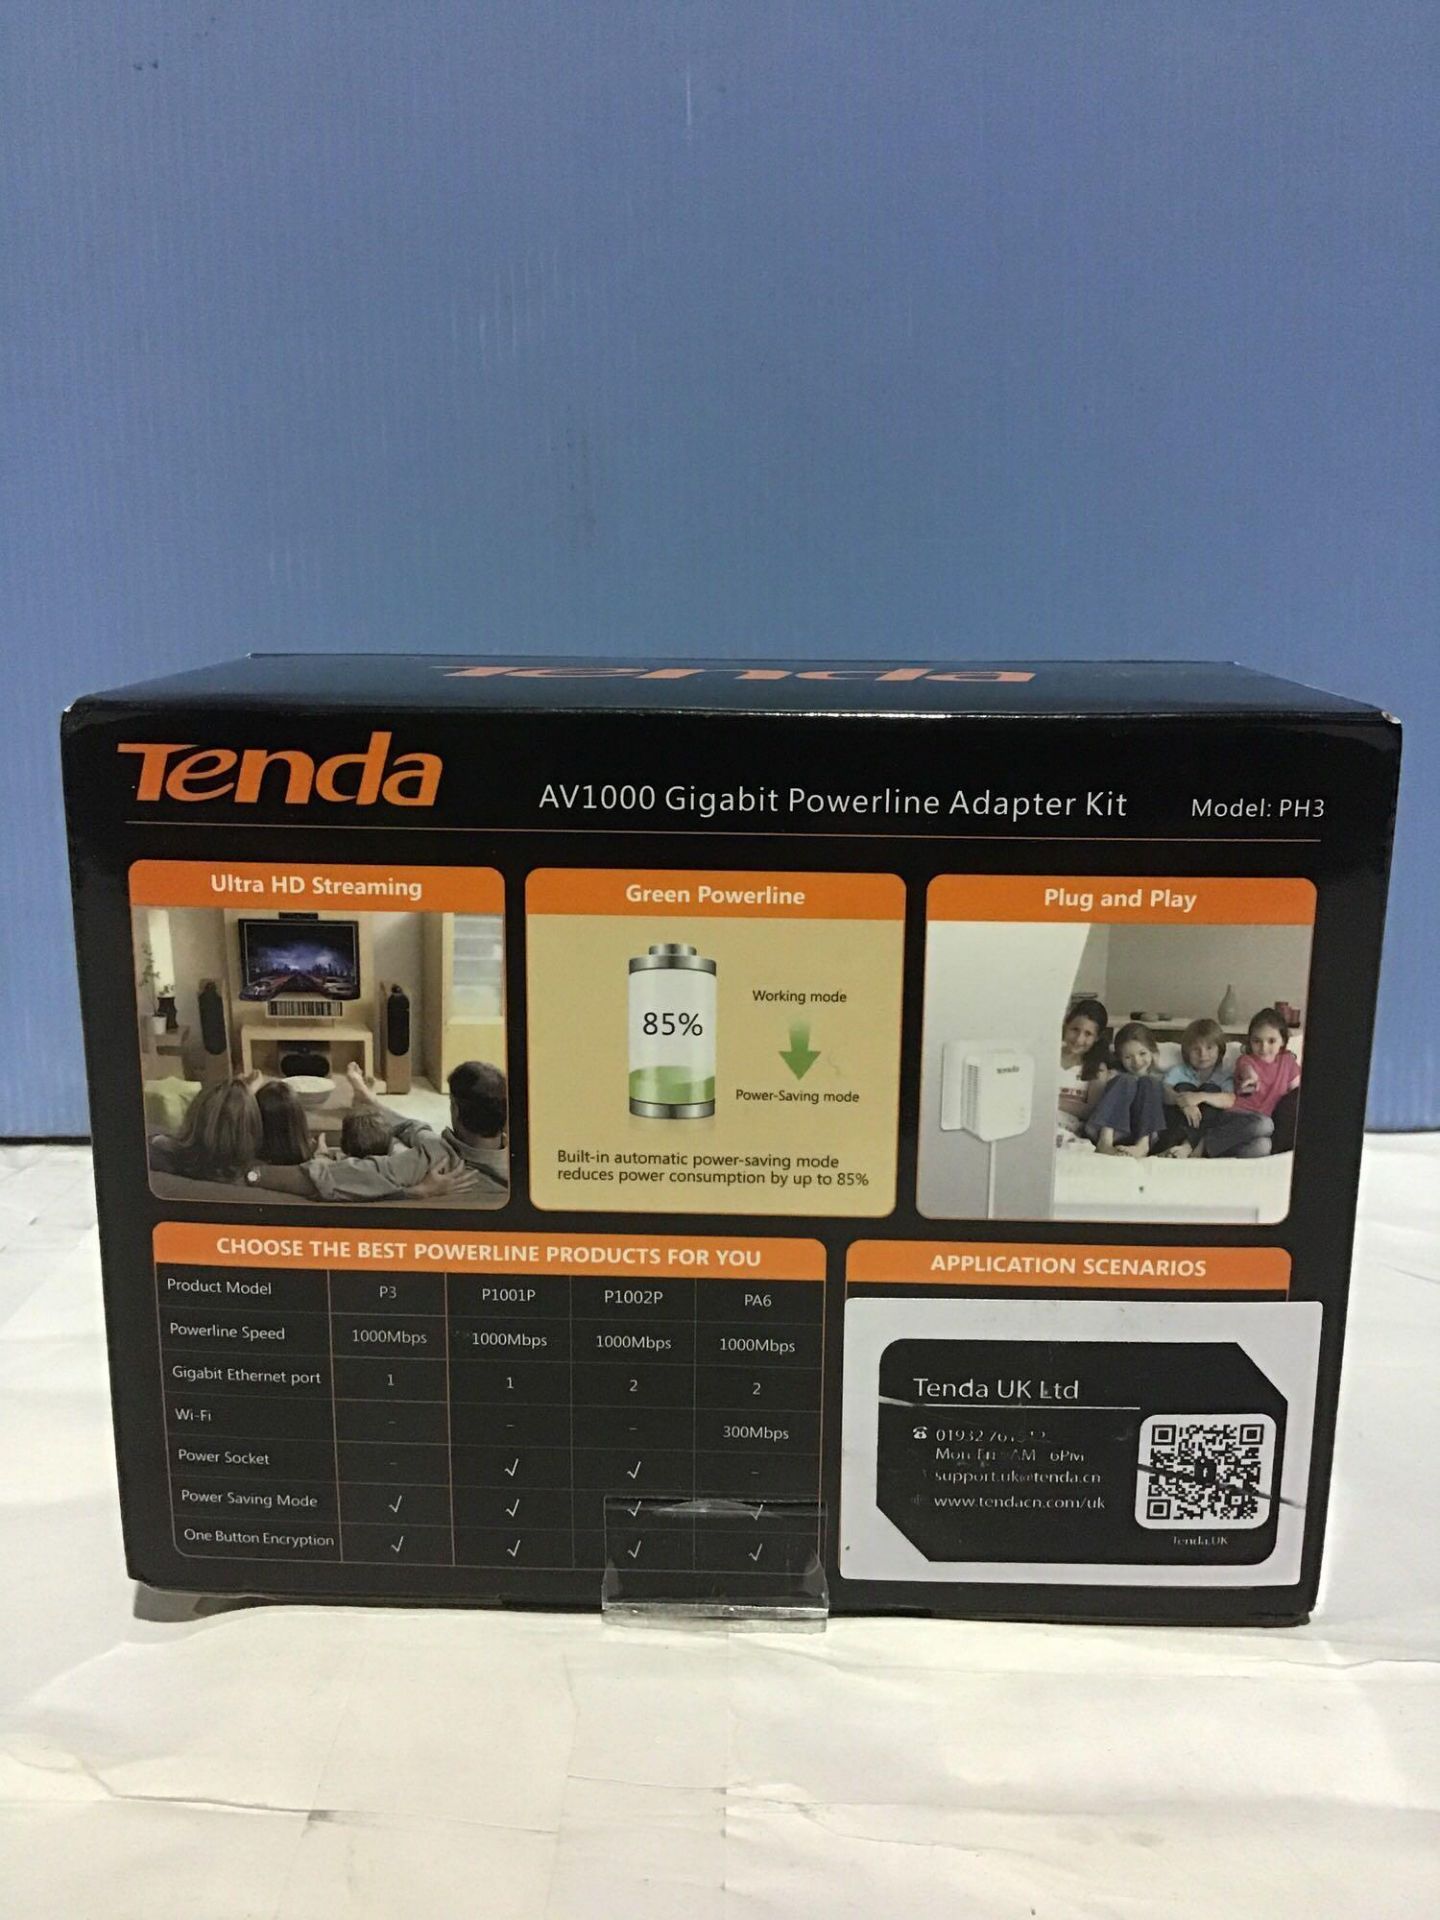 Tenda AV1000 1-Port Gigabit Powerline Adapter, Up to 1000Mbps (PH3),White - Image 2 of 5